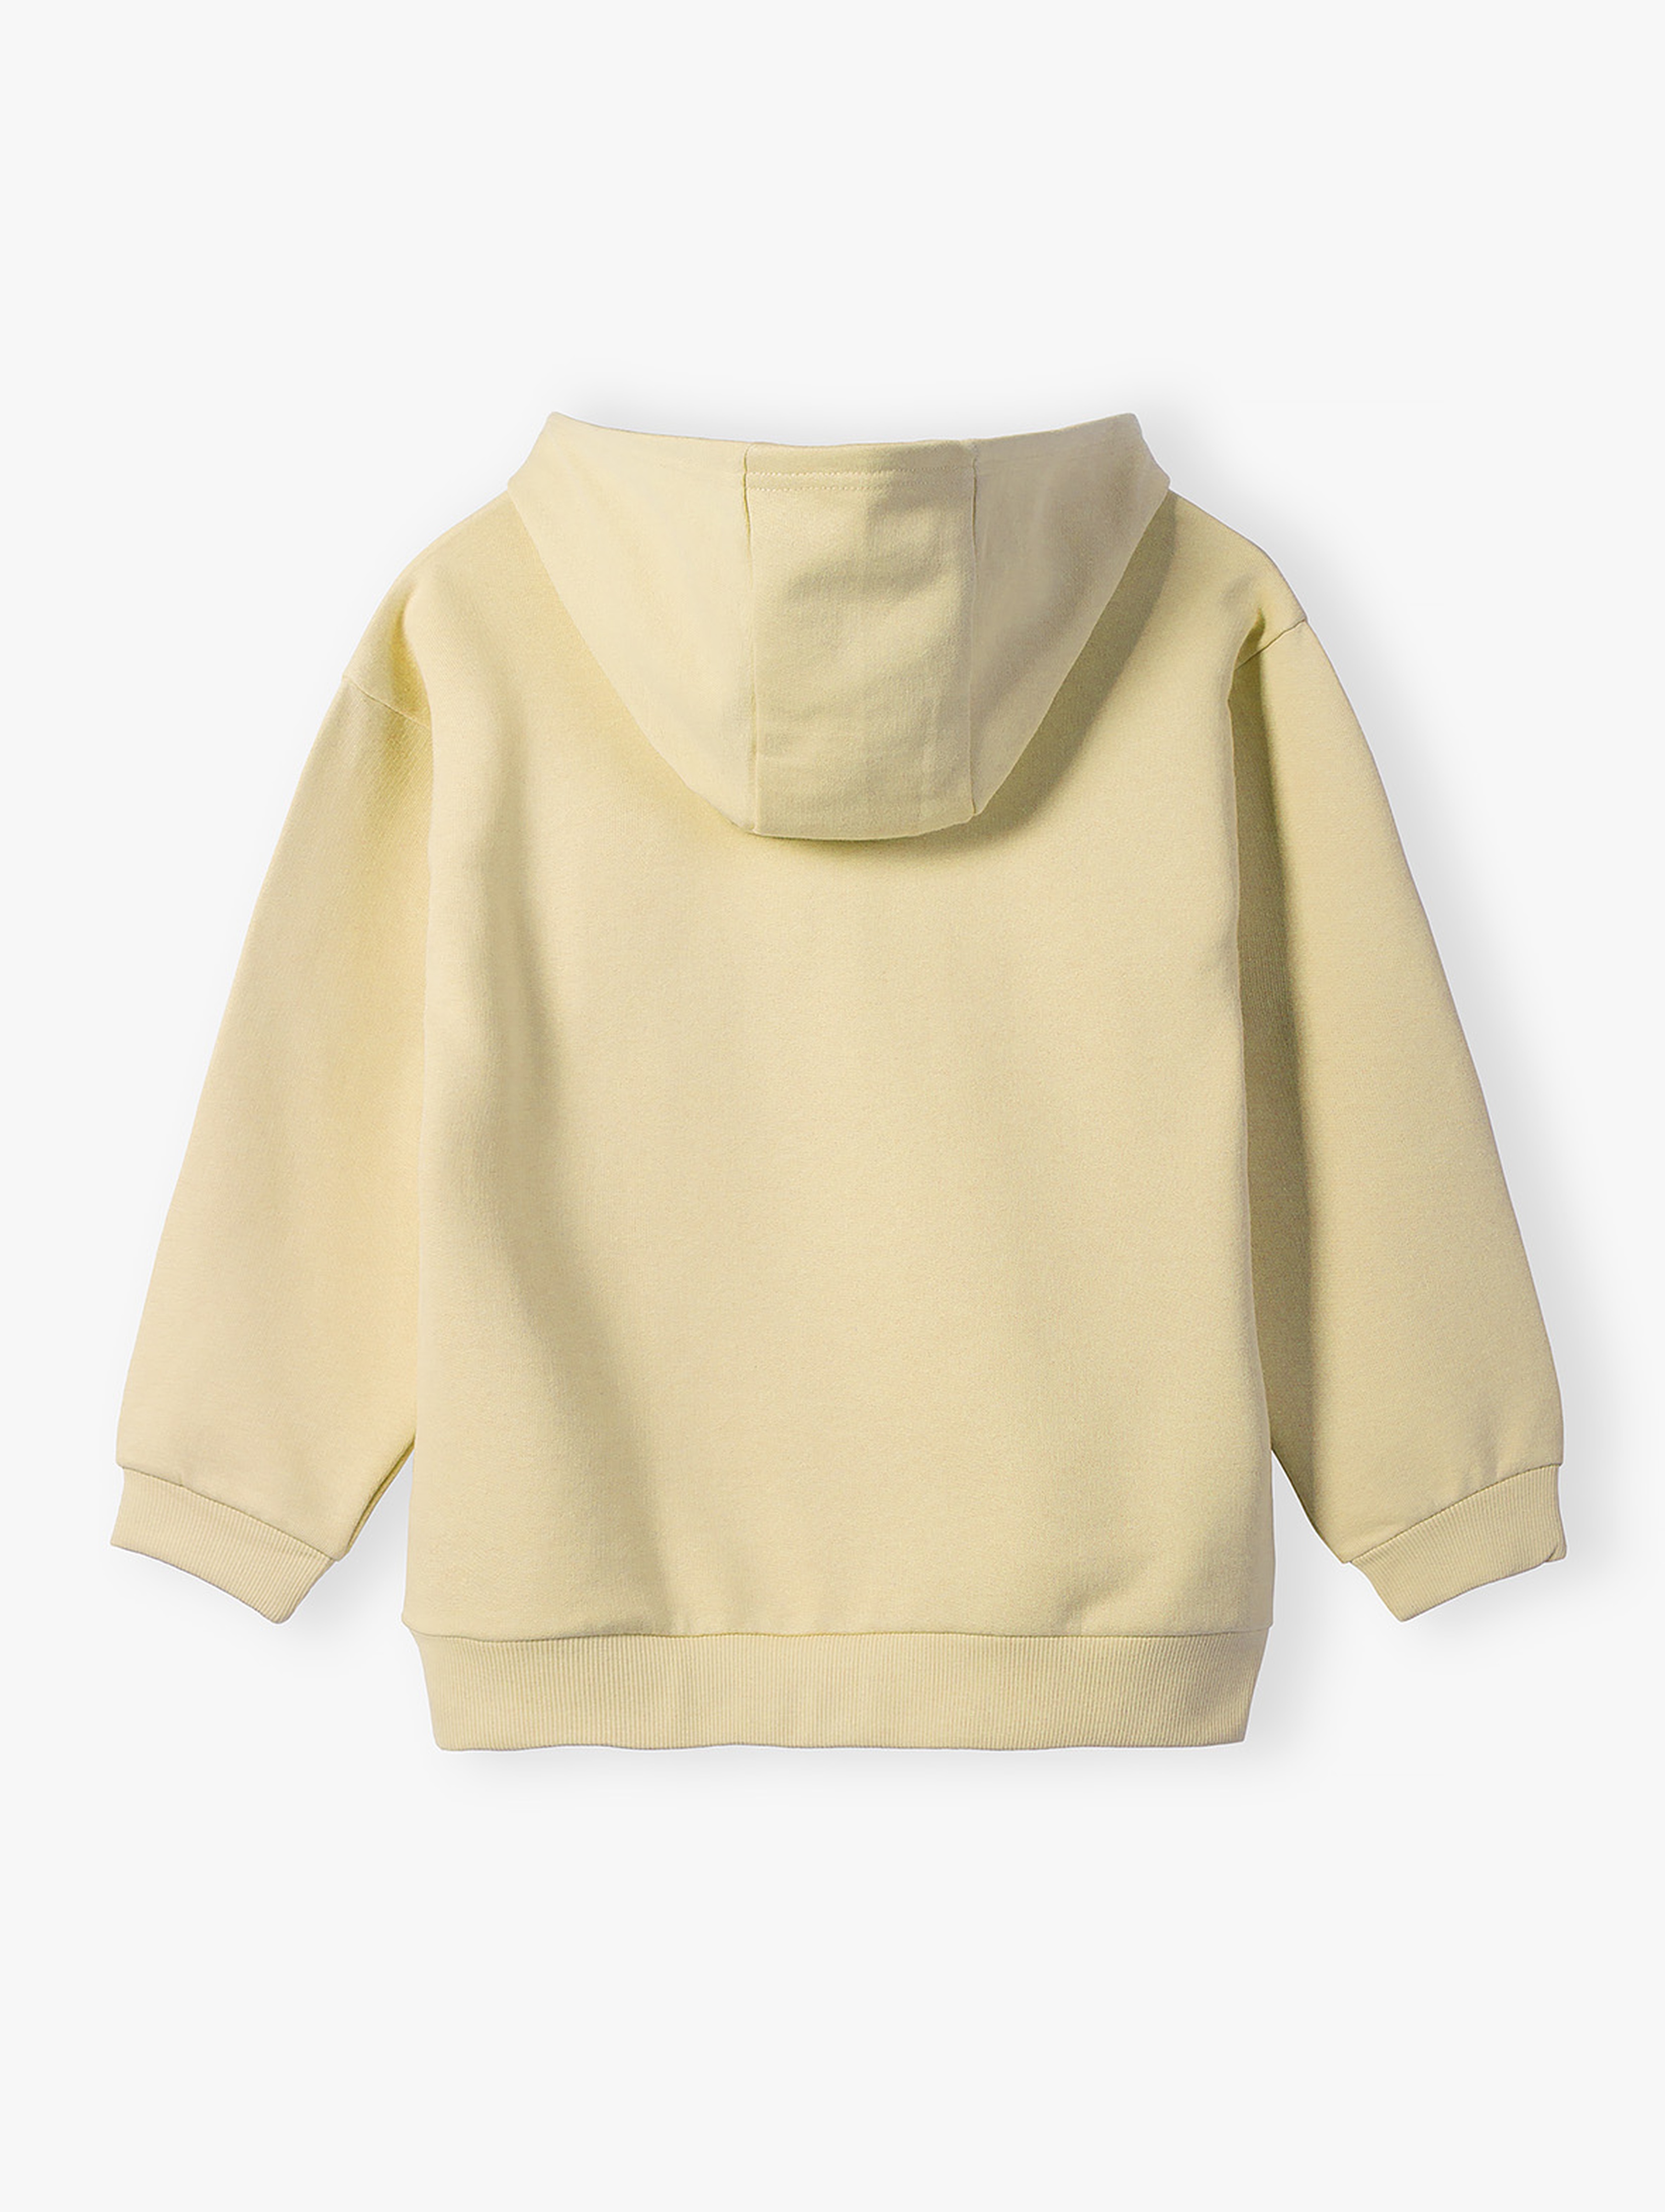 Bluza dresowa rozpinana z kapturem - żółta - Limited Edition